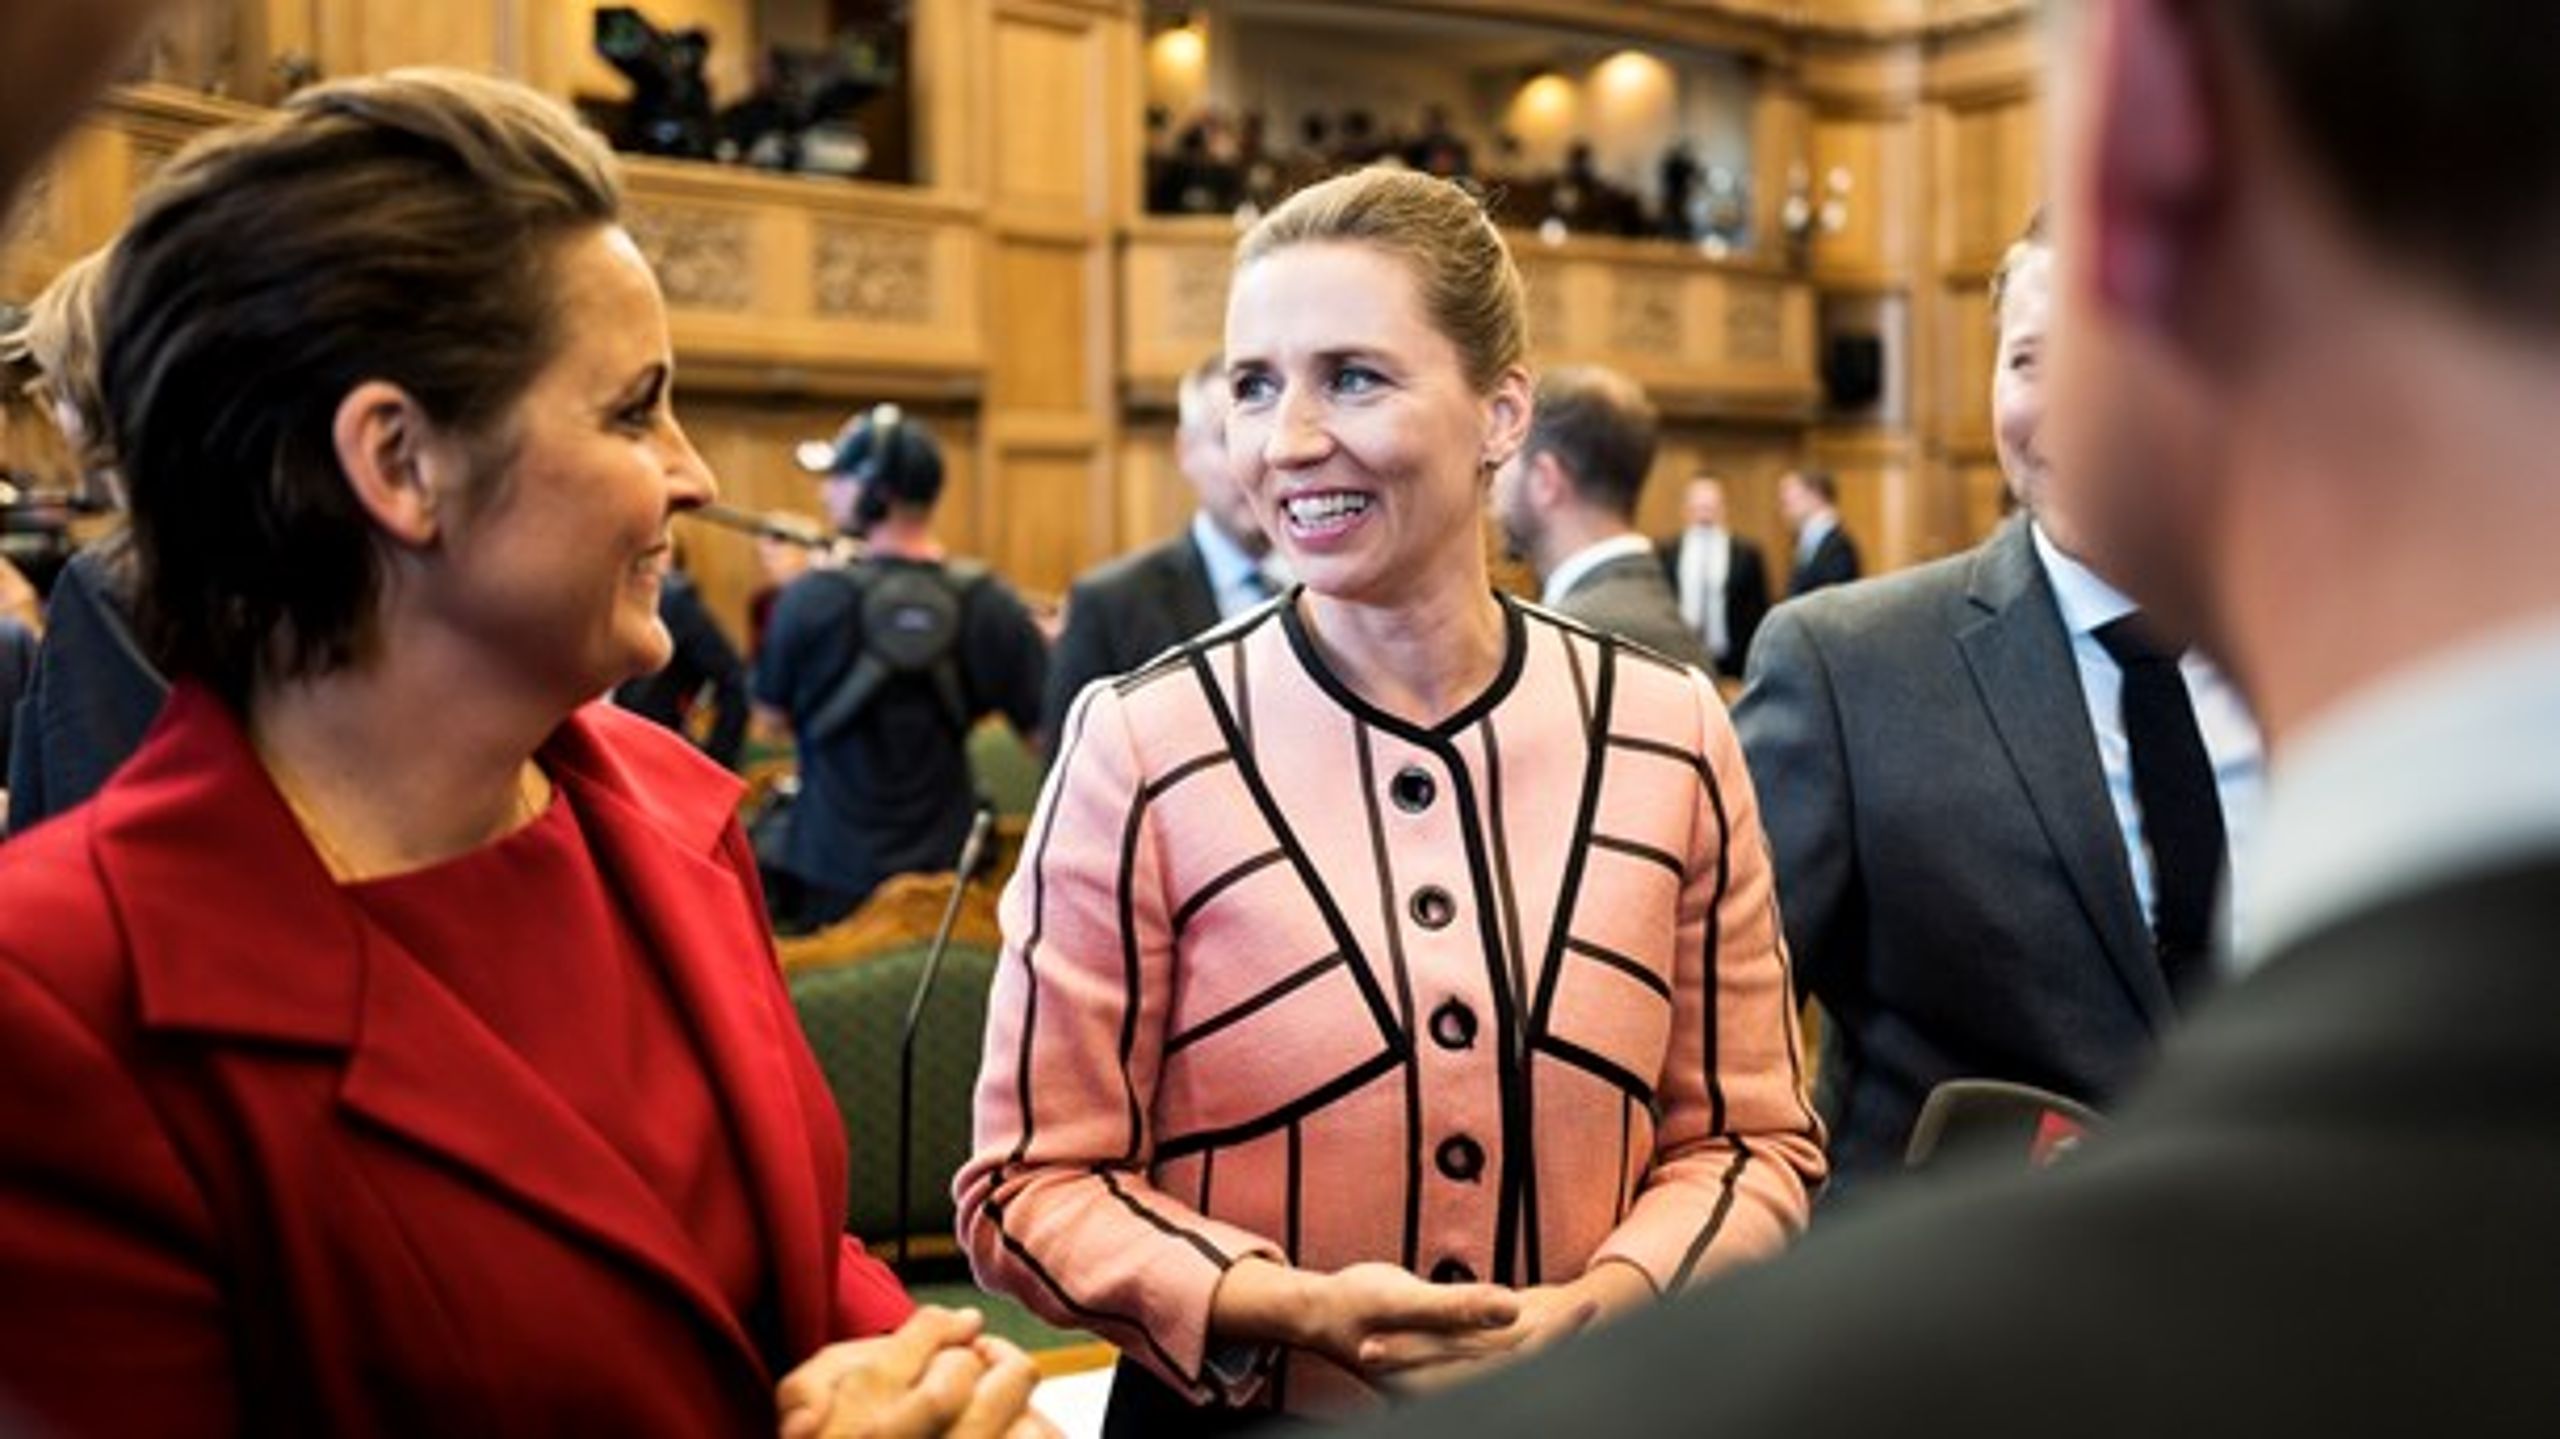 Både SF's Pia Olsen Dyhr og Socialdemokratiets Mette Frederiksen har grund til at smile. En ny måling viser nemlig fremgang til de to partier og en solid føring til rød blok.